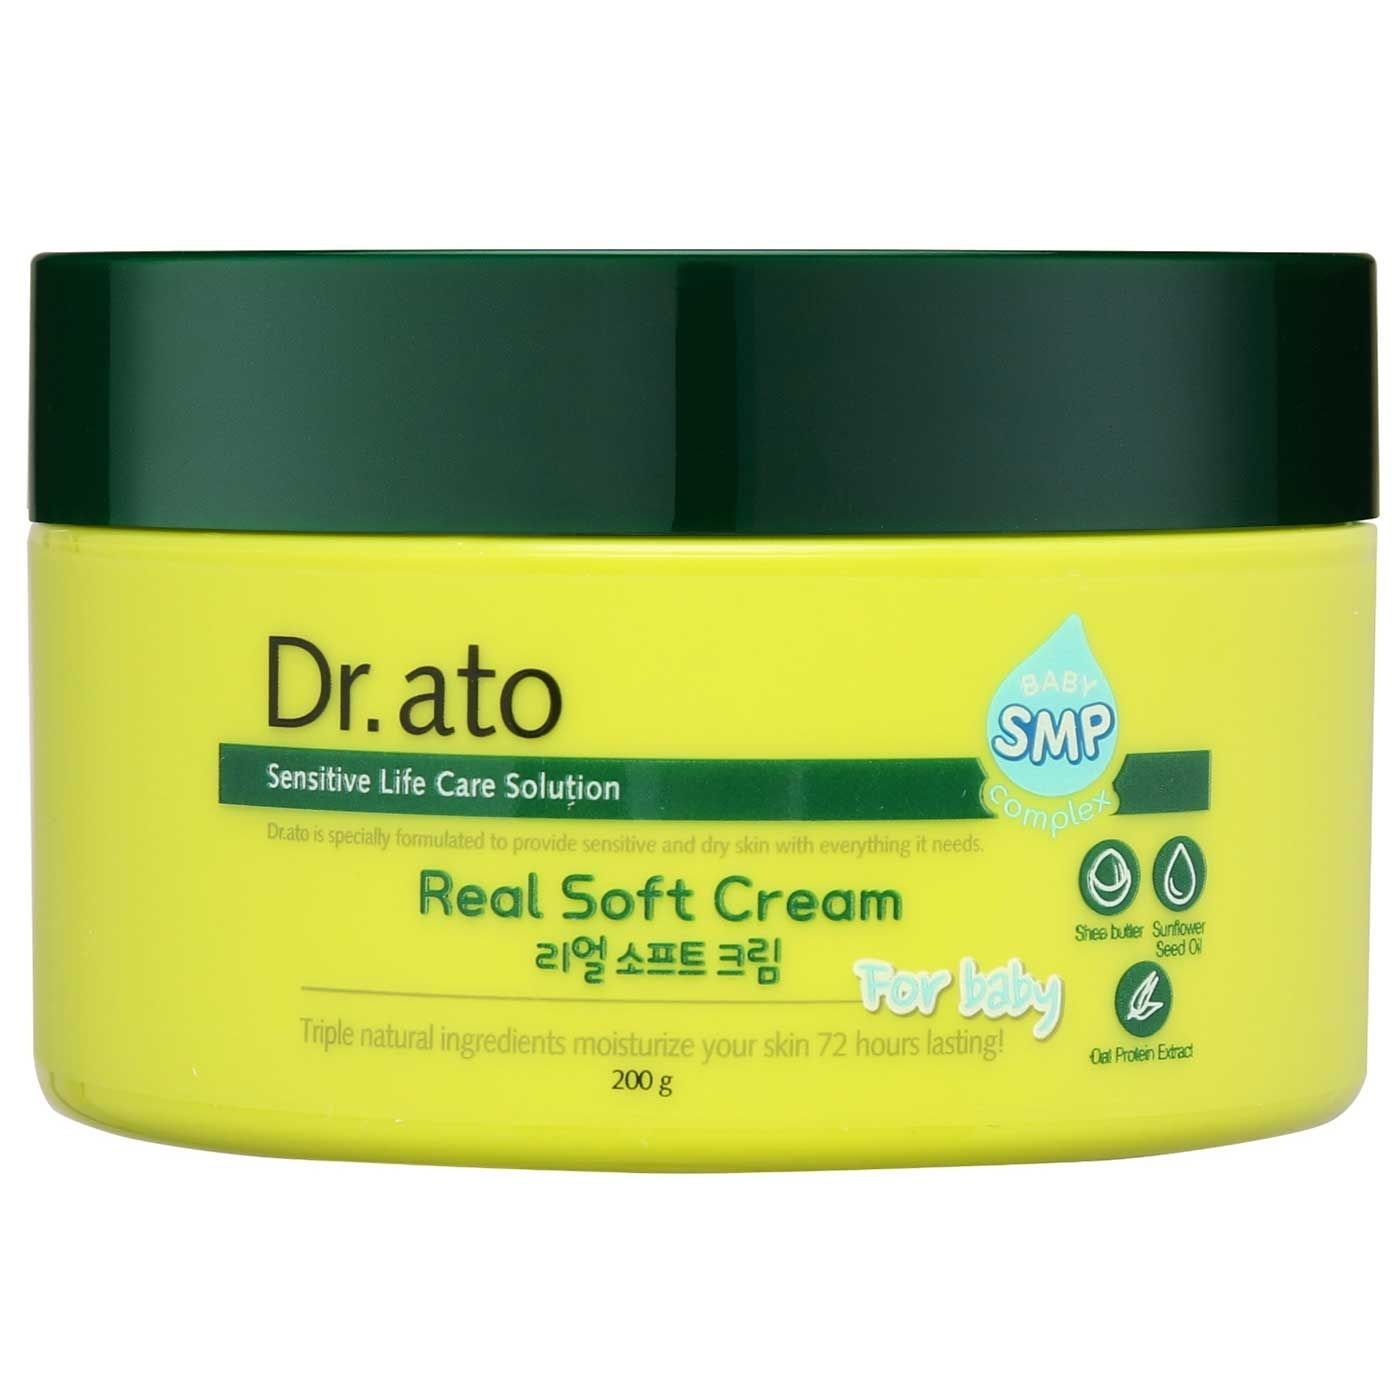 Dr.ato Real Soft Cream 200g - 1